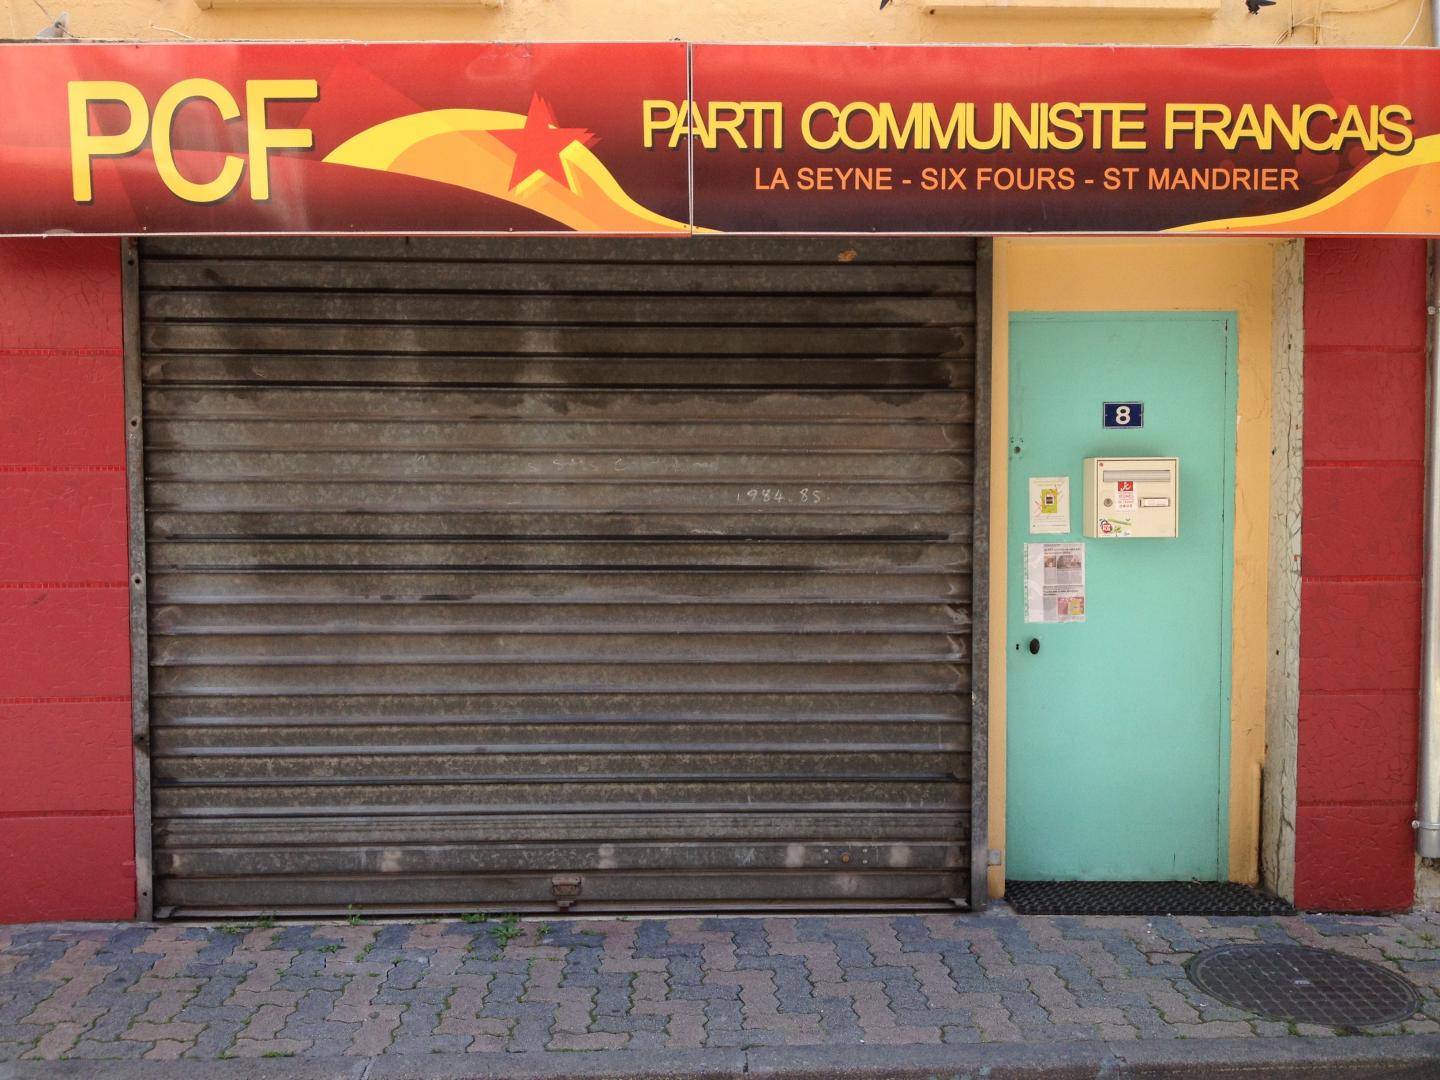 Le siège du PCF de la Seyne-sur-Mer (83) vandalisé